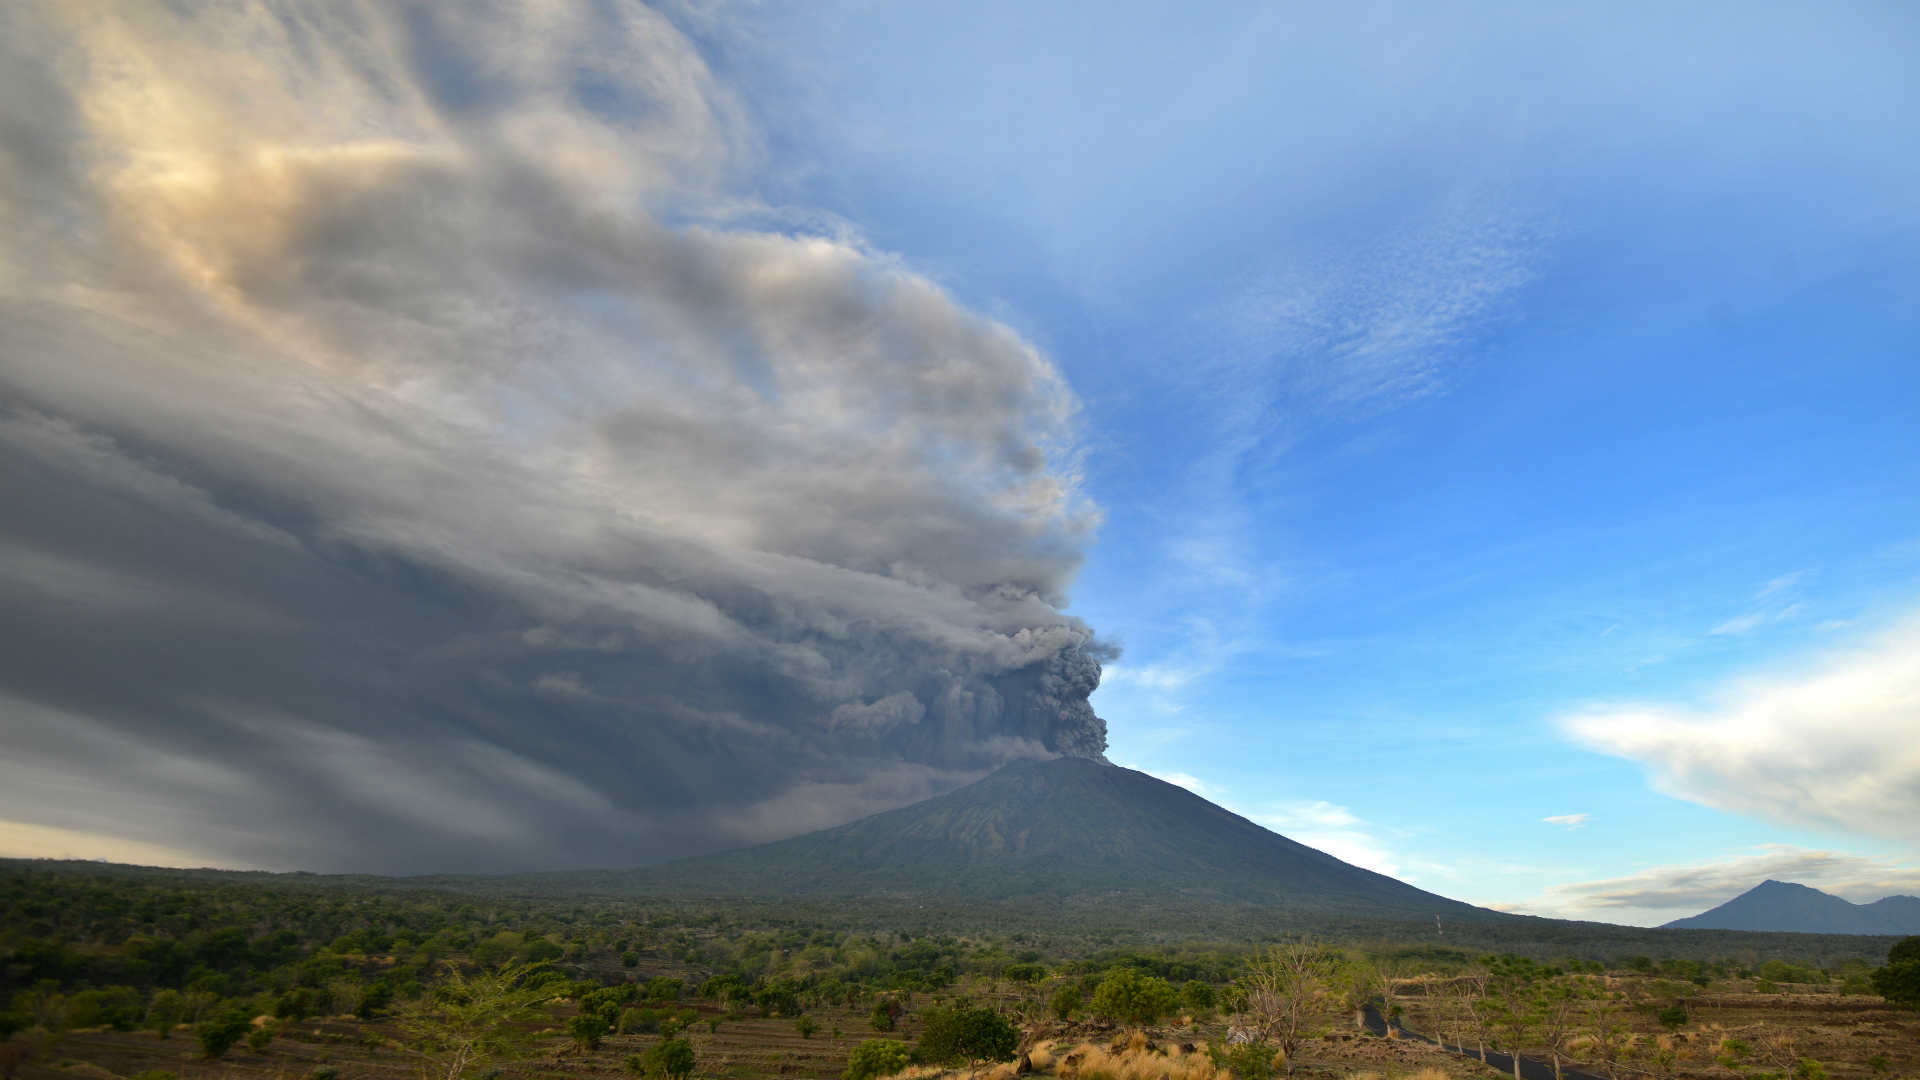 La erupción de un volcán en Bali eleva al nivel máximo la alerta para la aviación